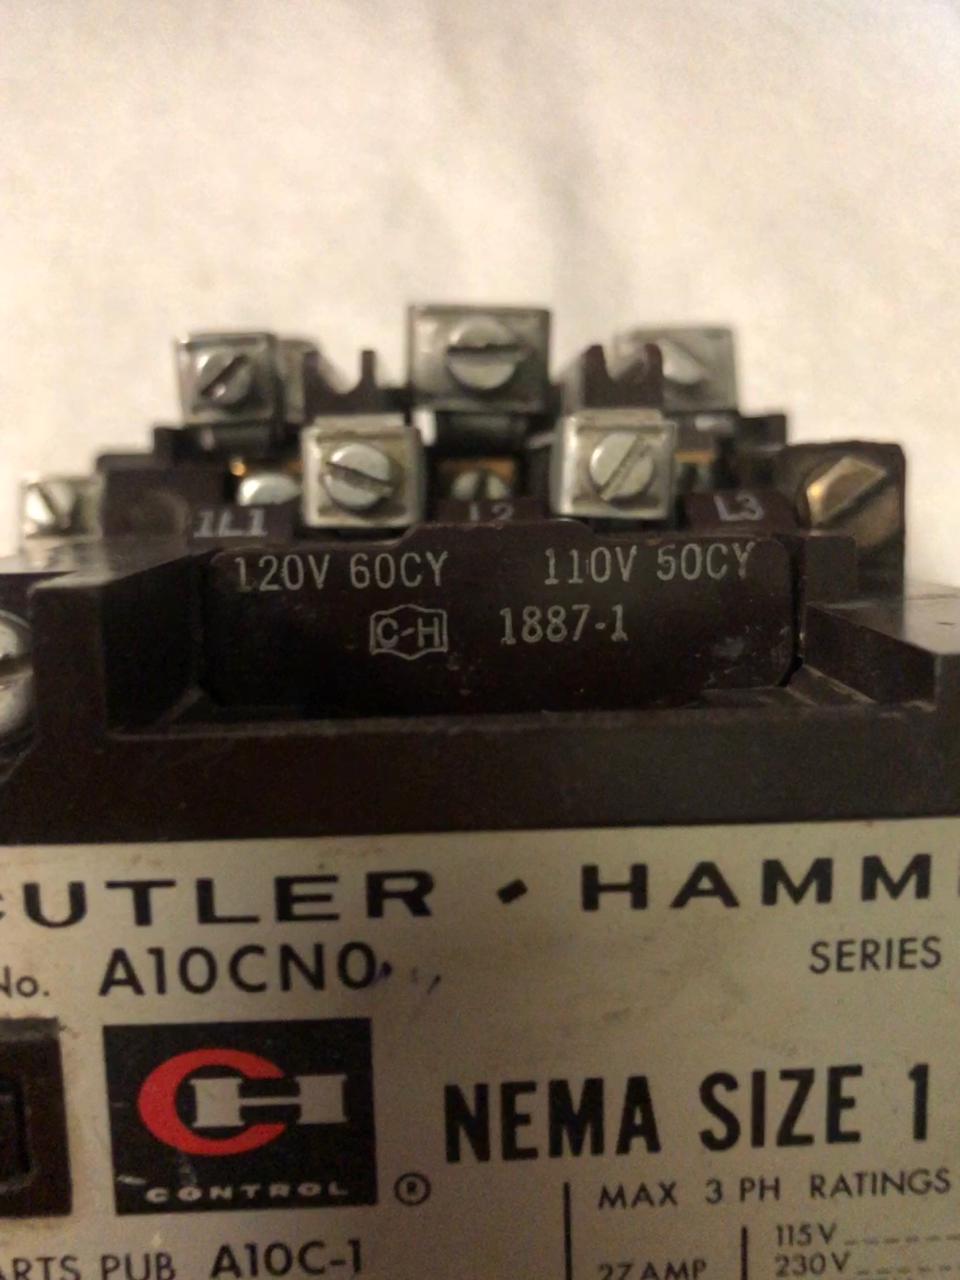 Contactor Cutler Hammer A10CN0